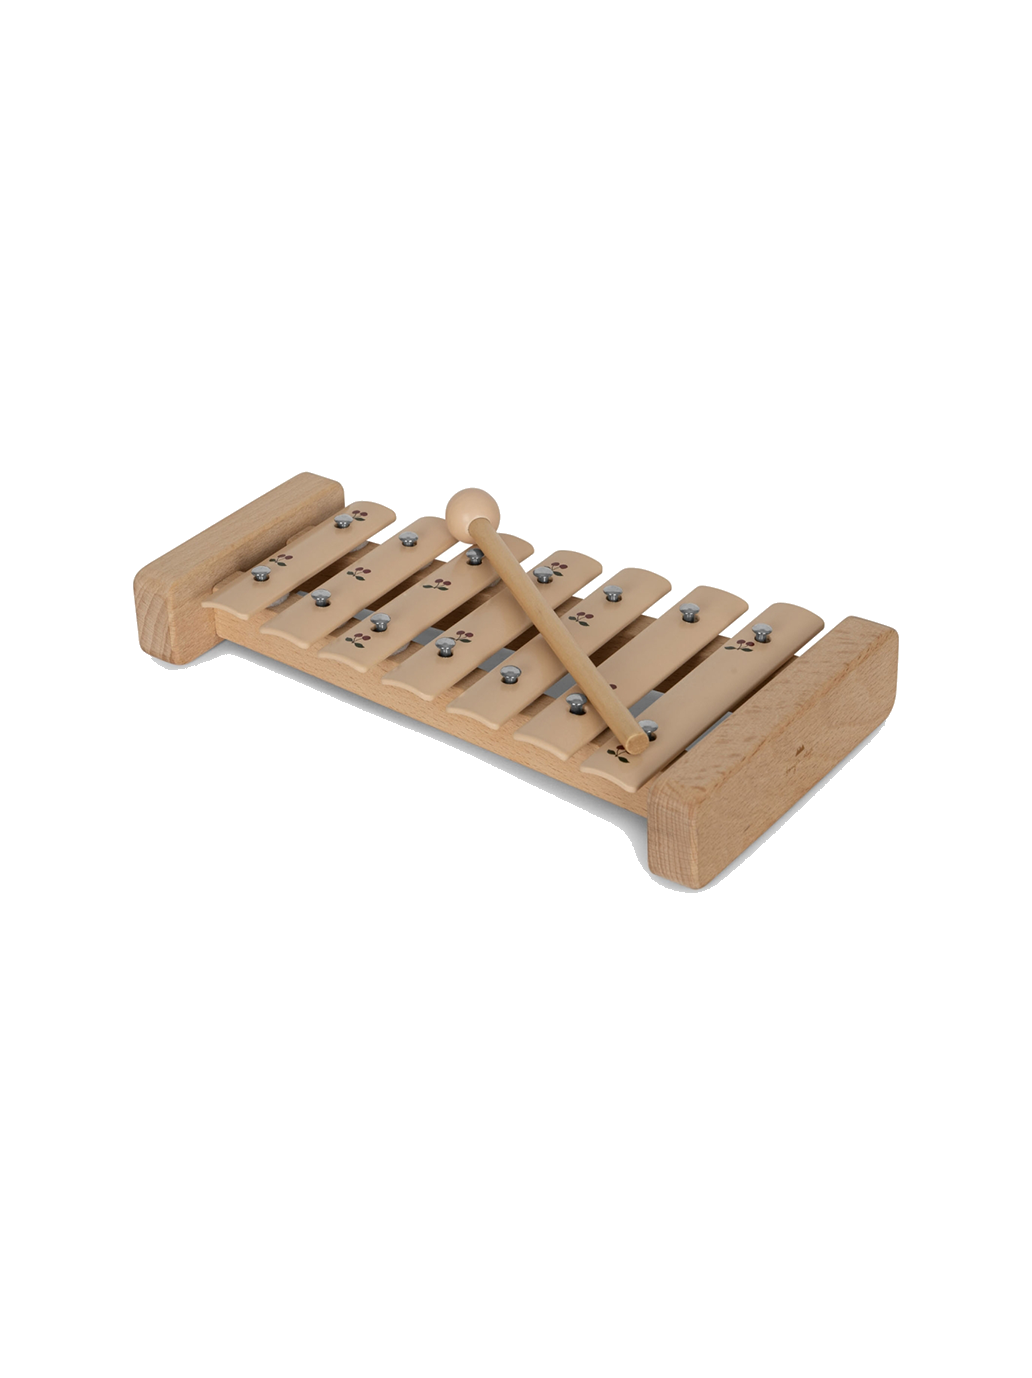 Xilófono musical de madera.